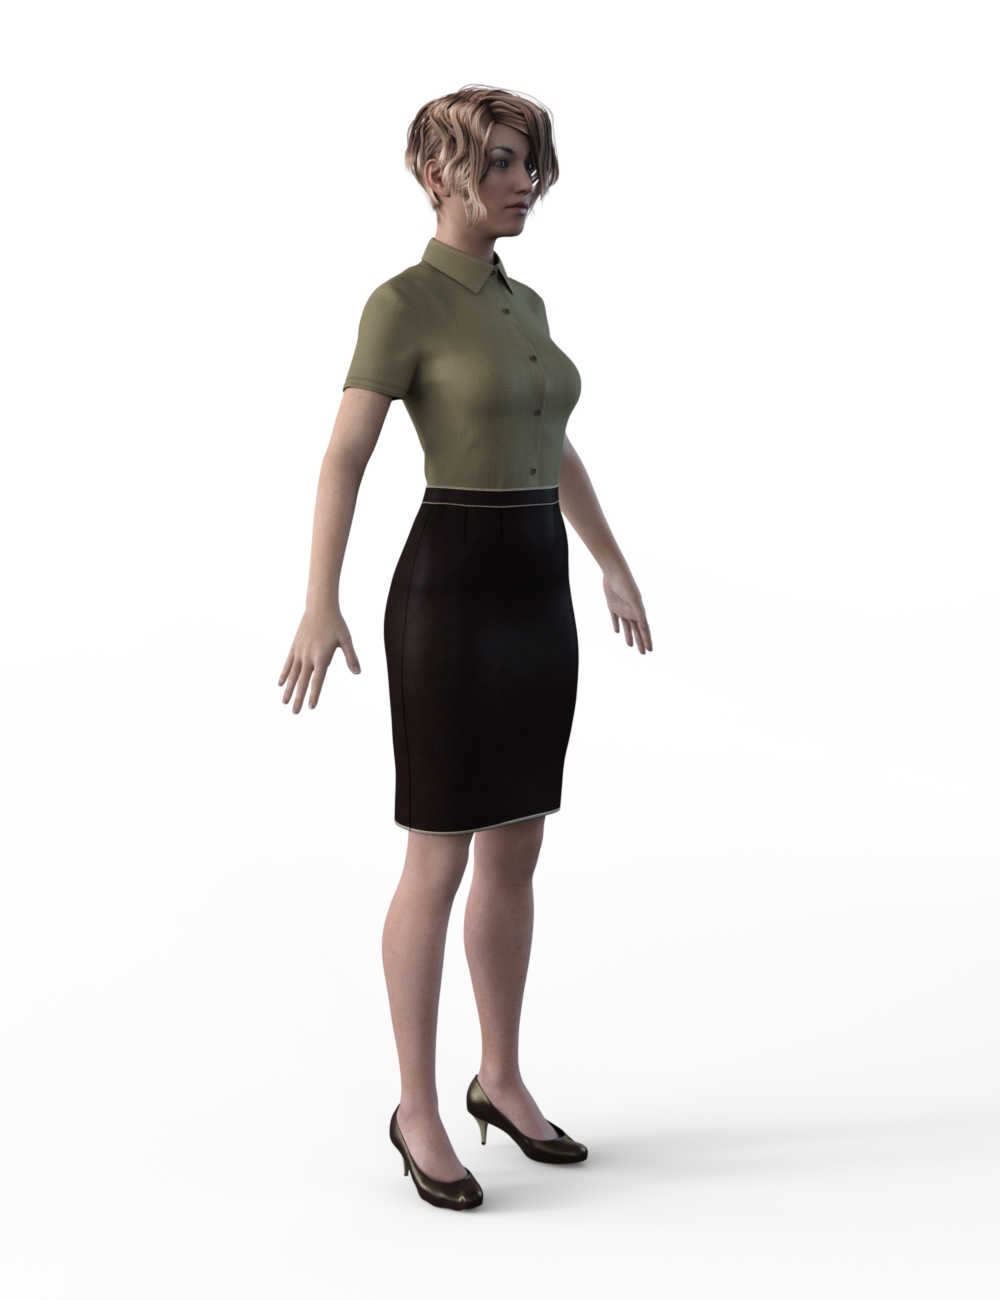 FBX- Base Female Office Wear by: Paleo, 3D Models by Daz 3D